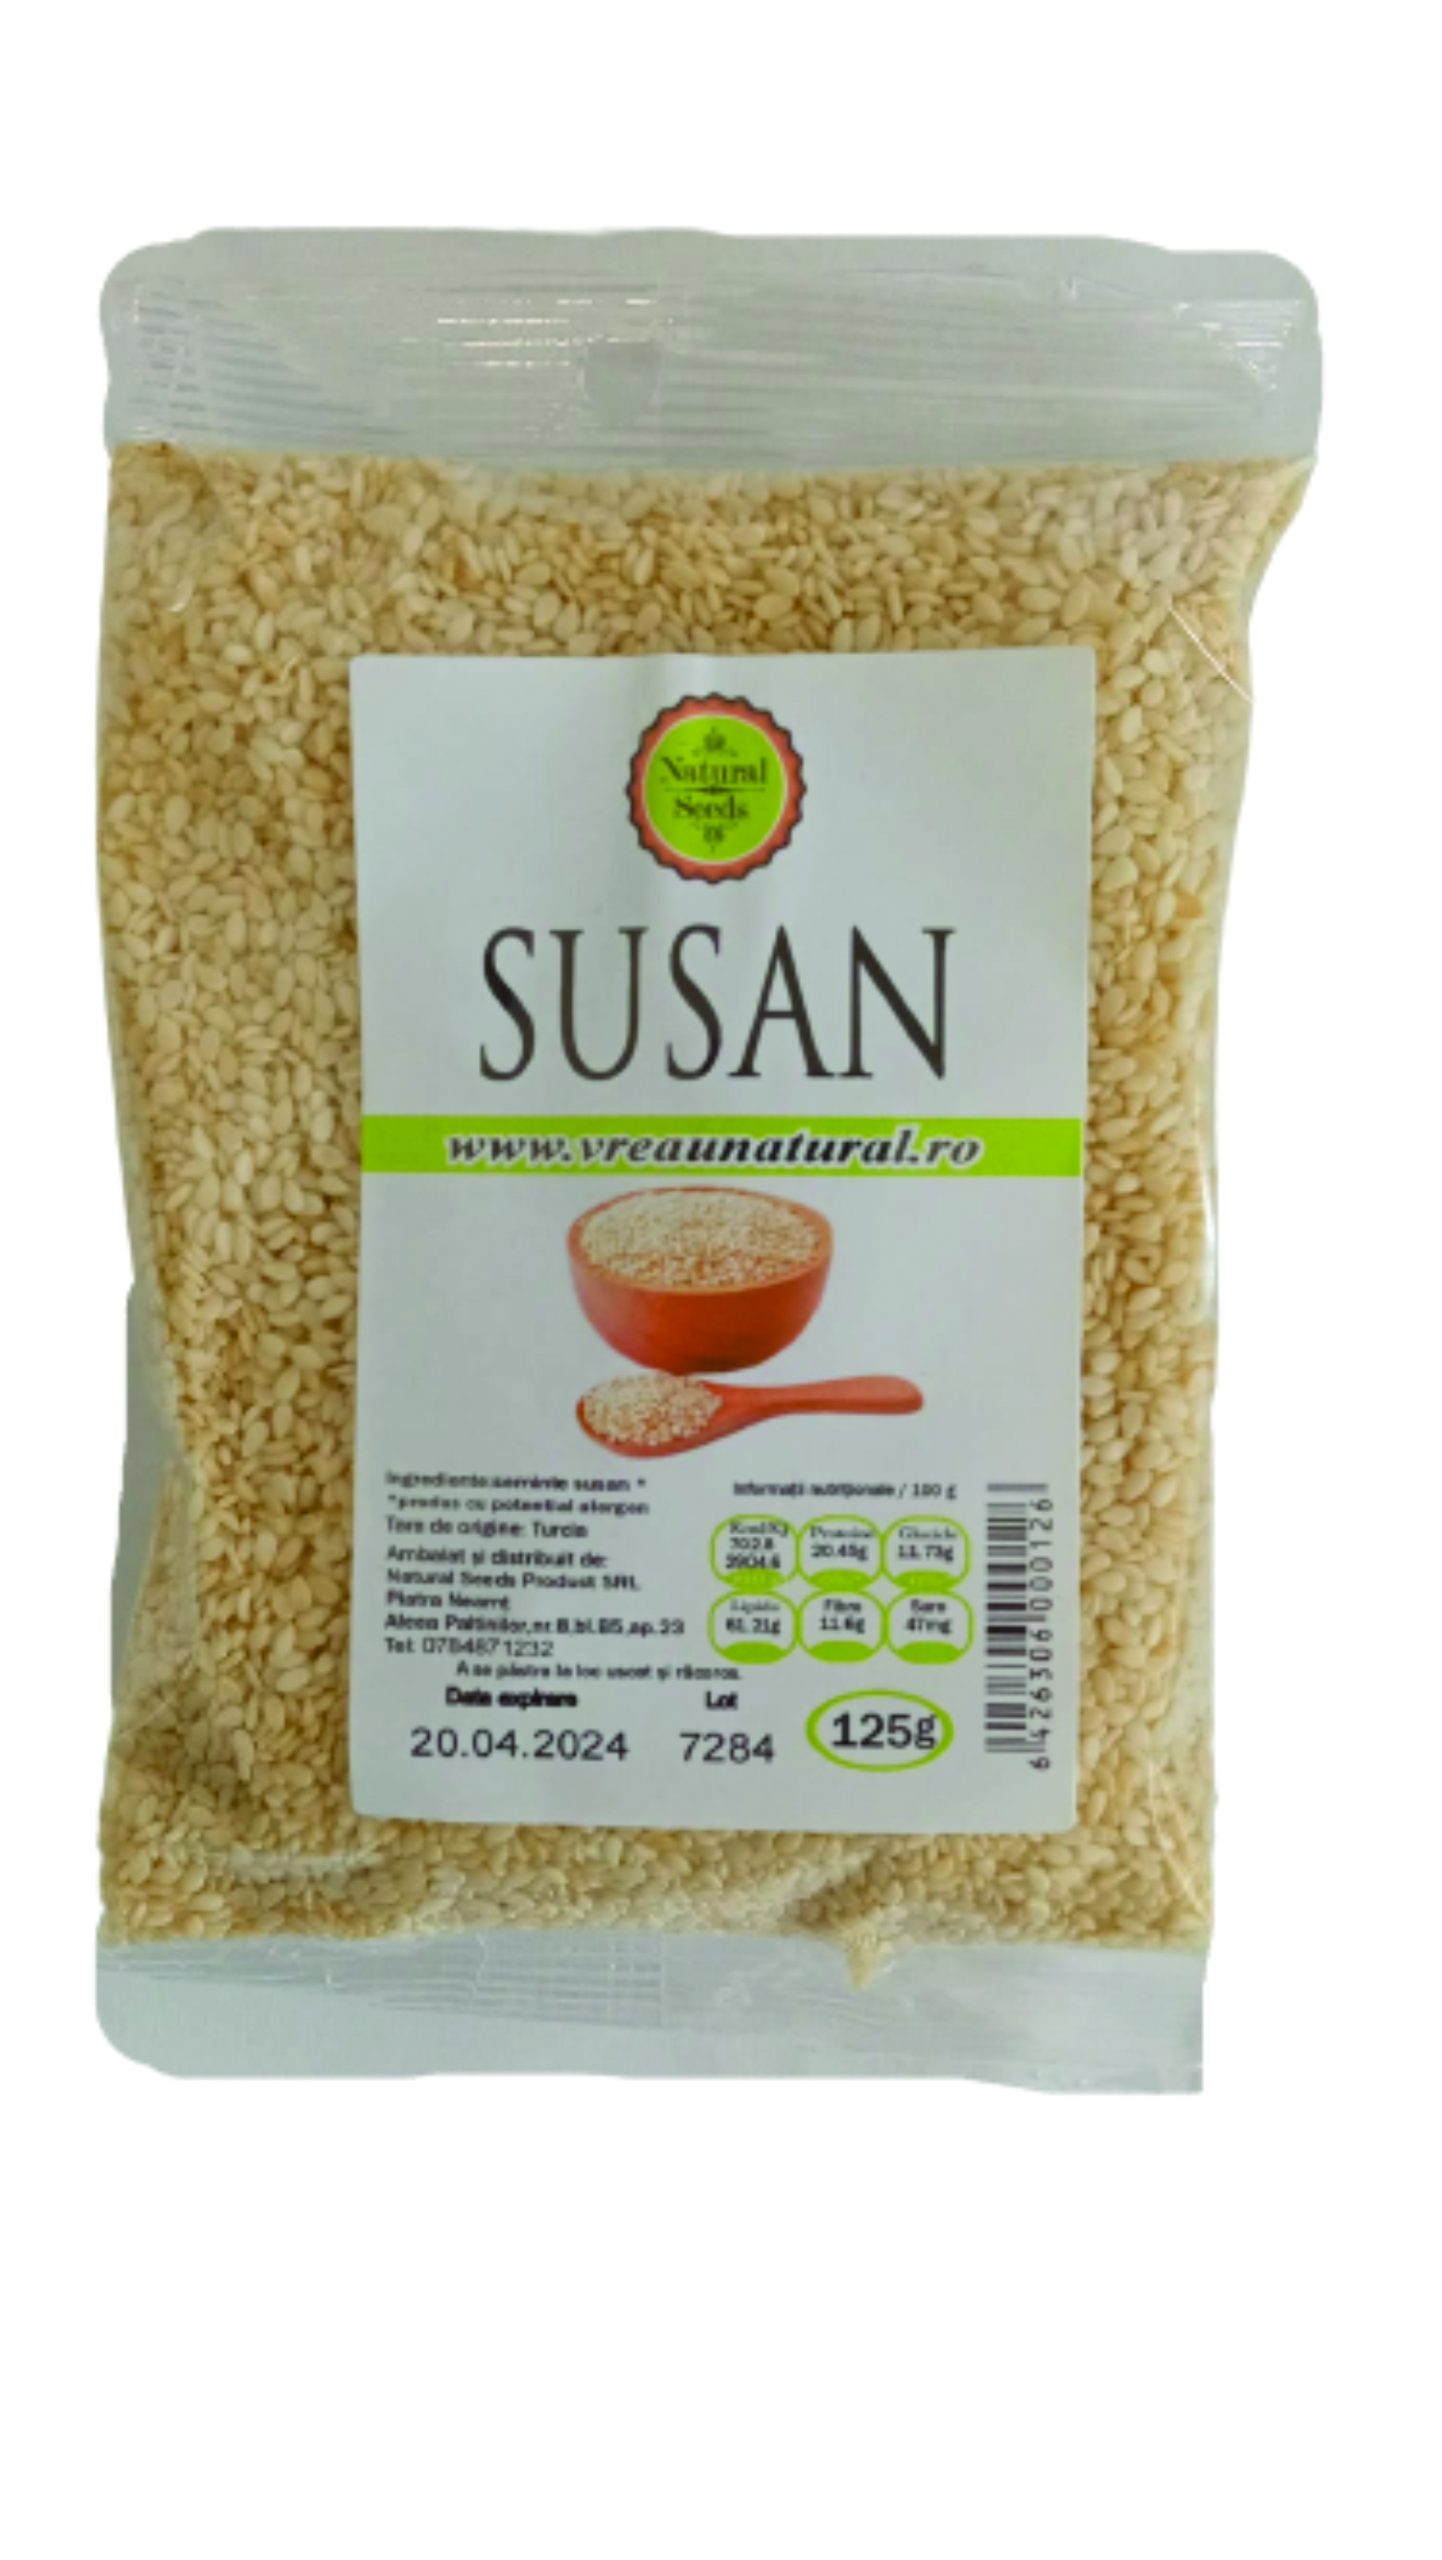 Susan alb, Natural Seeds Product